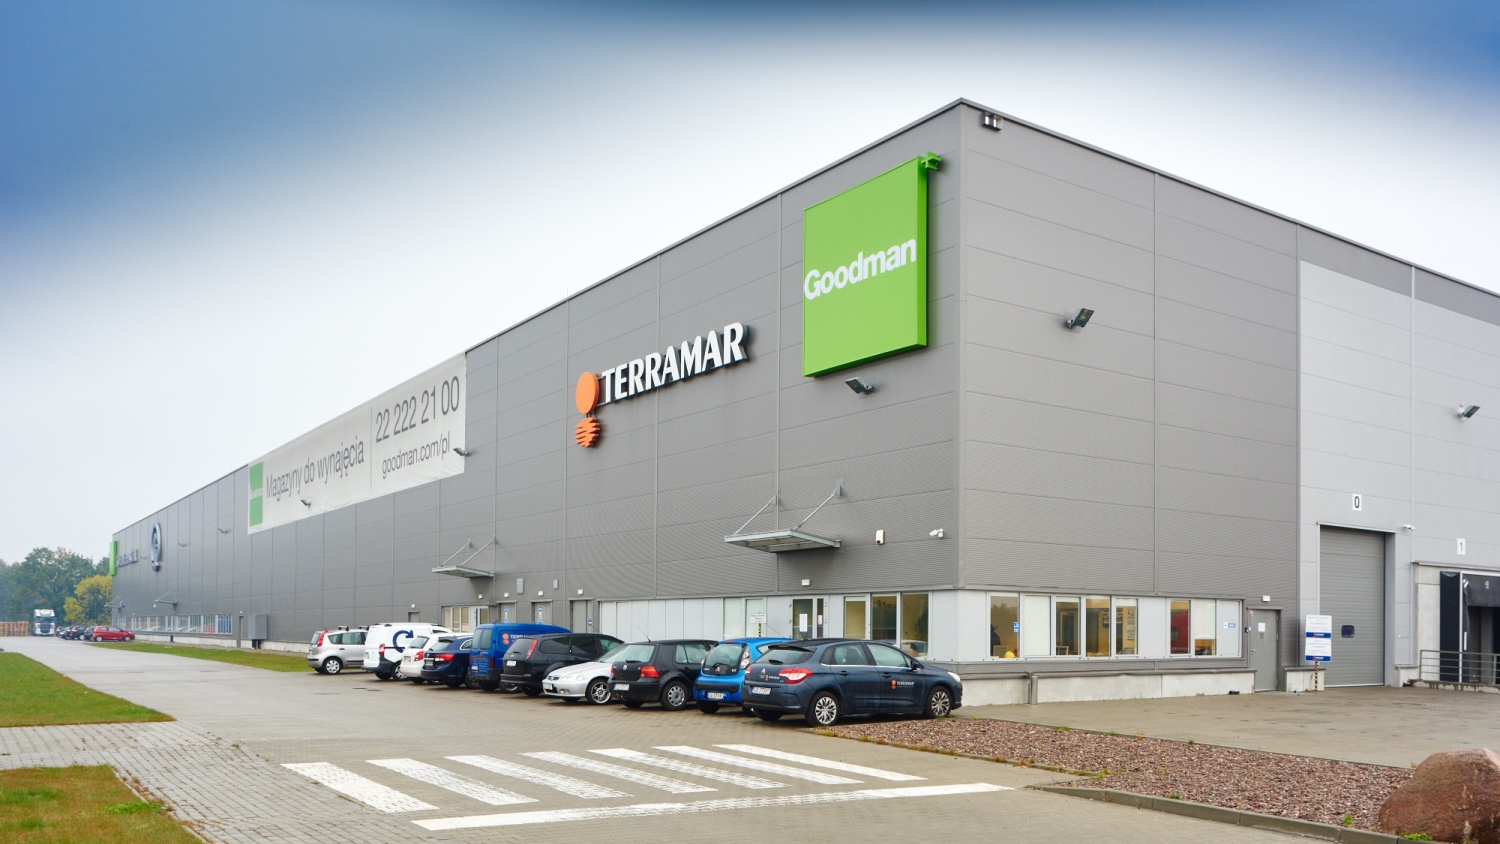 News Article development Gdansk Goodman industrial Poland